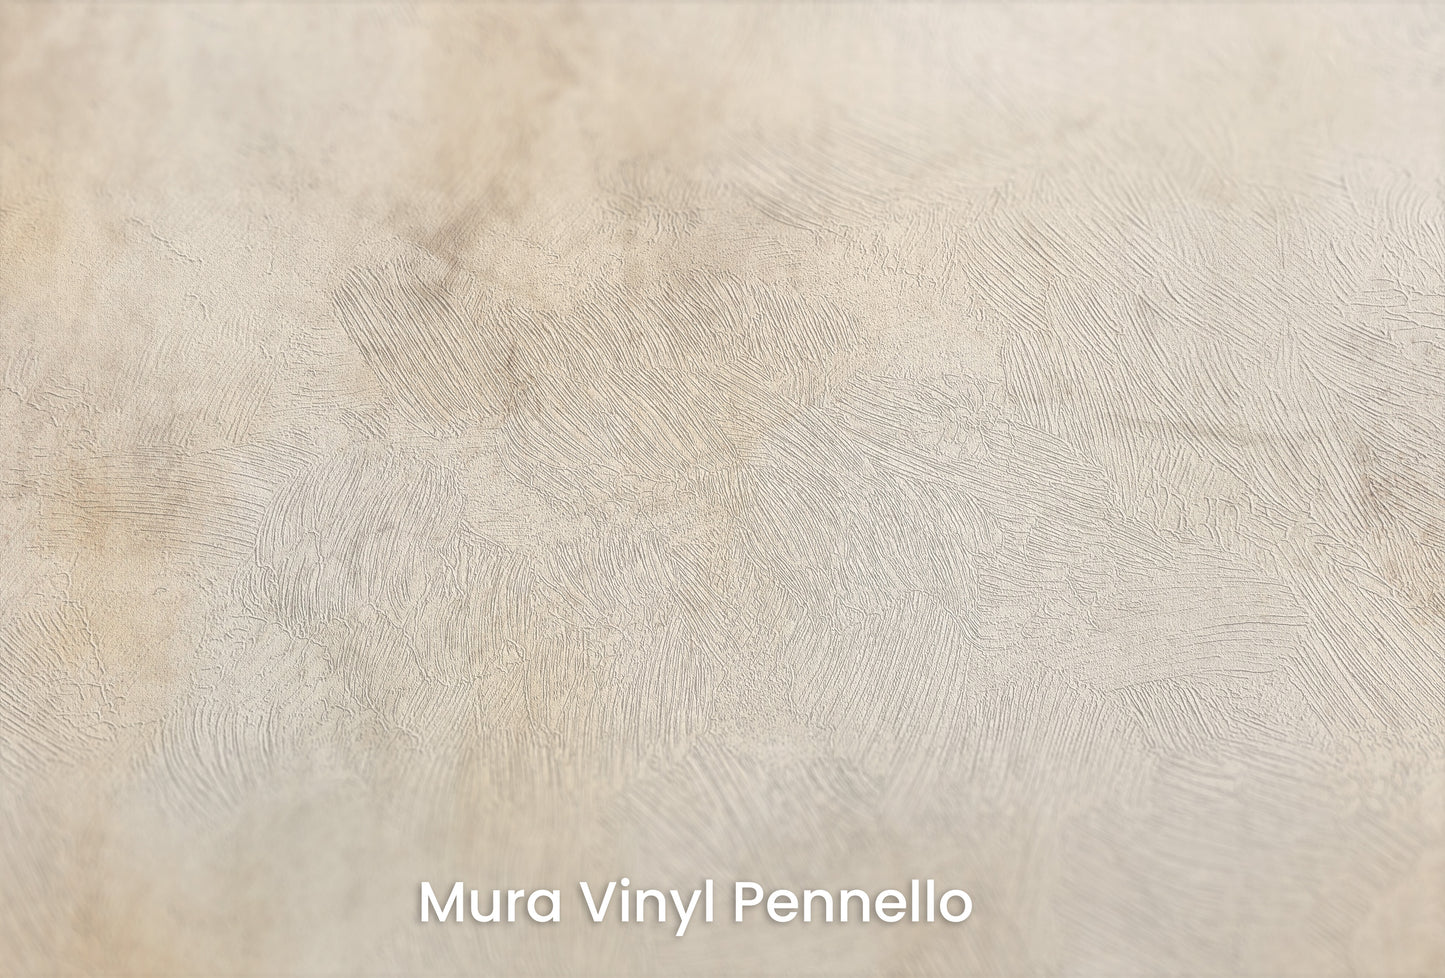 Zbliżenie na artystyczną fototapetę o nazwie VINTAGE PARCHMENT WHISPERS na podłożu Mura Vinyl Pennello - faktura pociągnięć pędzla malarskiego.